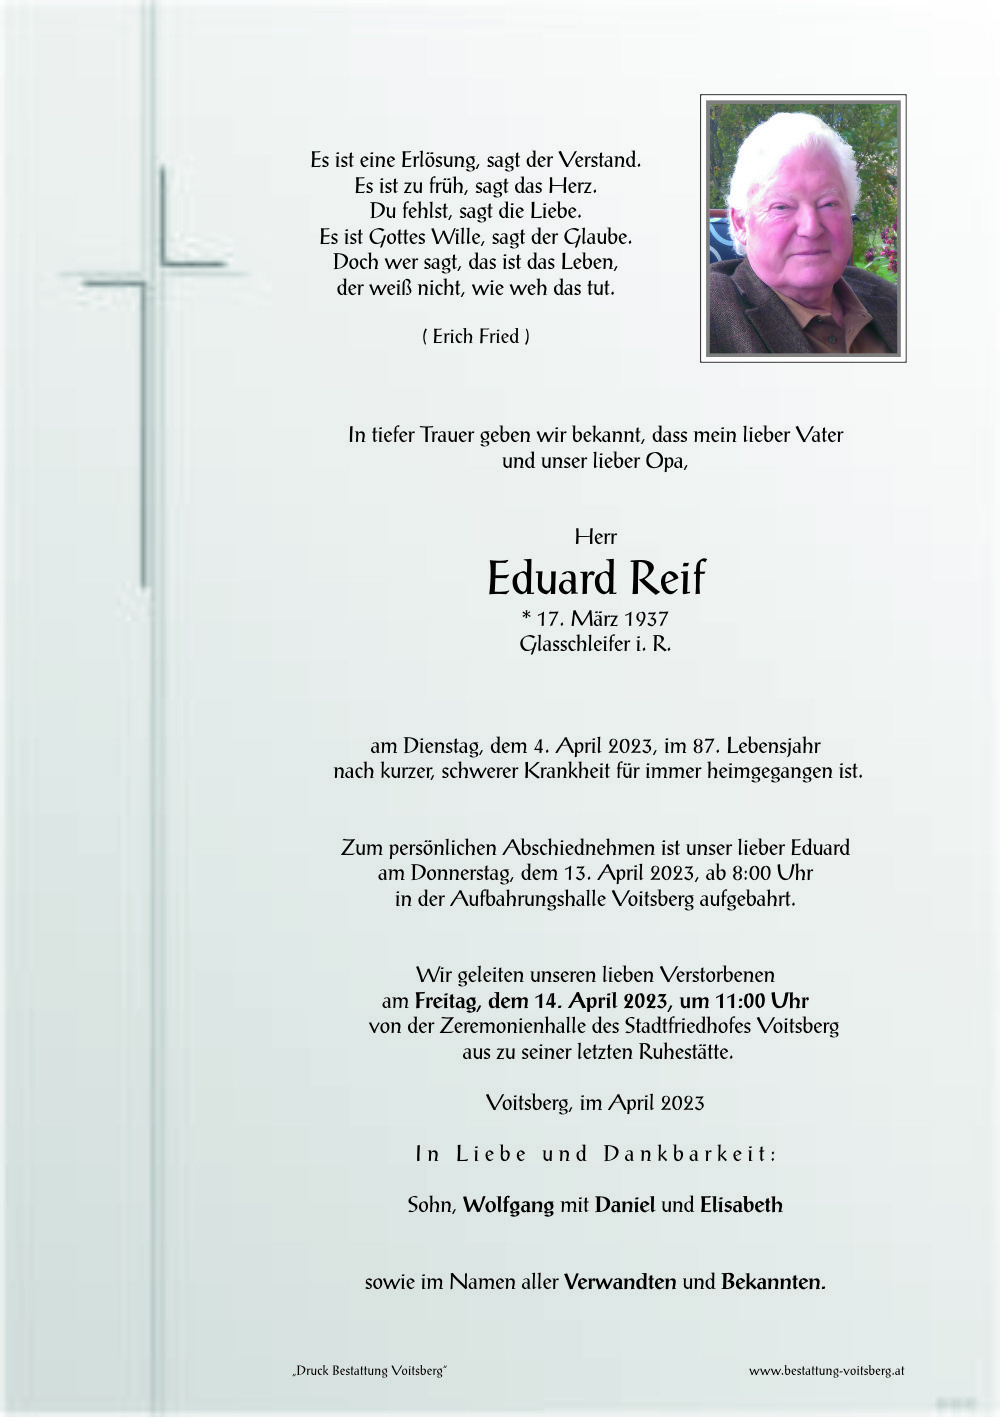 Eduard Reif